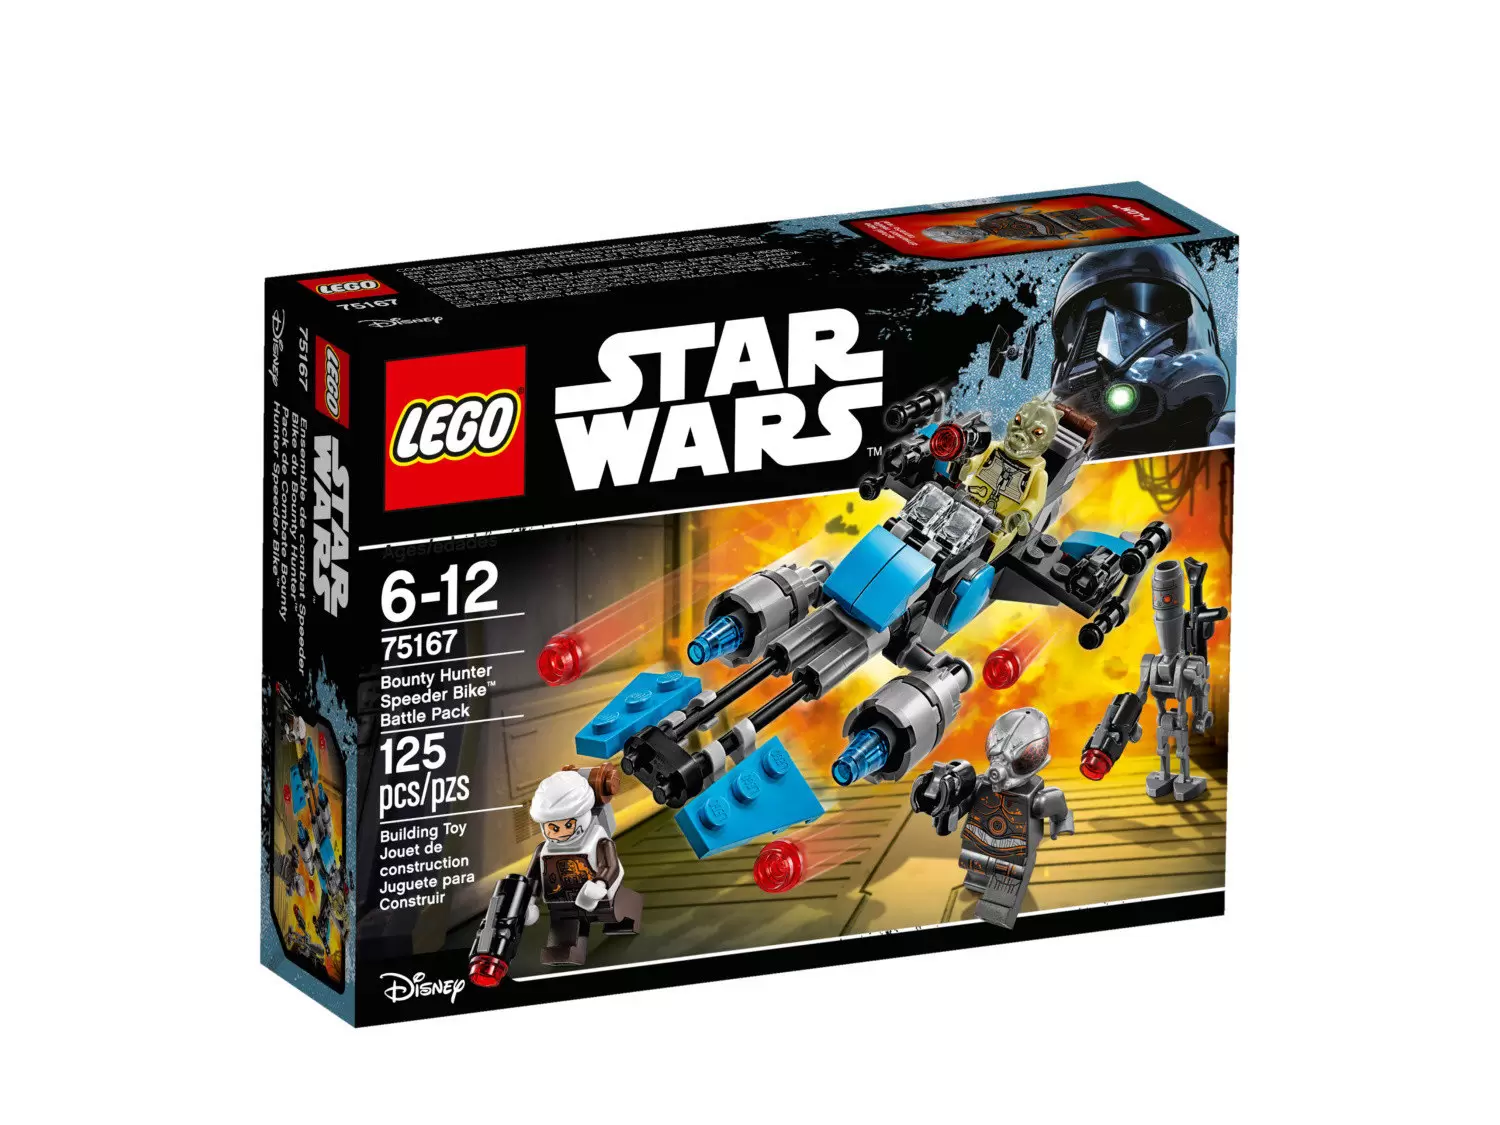 LEGO Star Wars - Bounty Hunter Speeder Bike Battle Pack